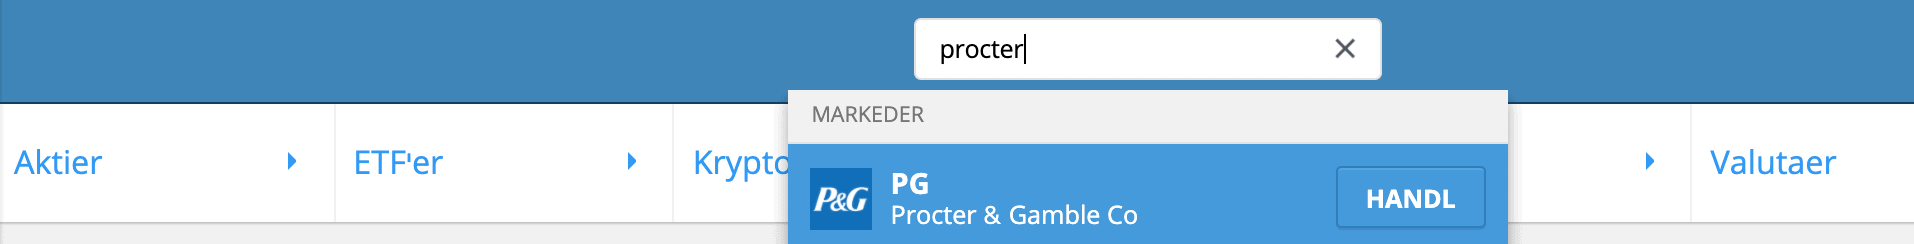 Soeg Procter Gamble